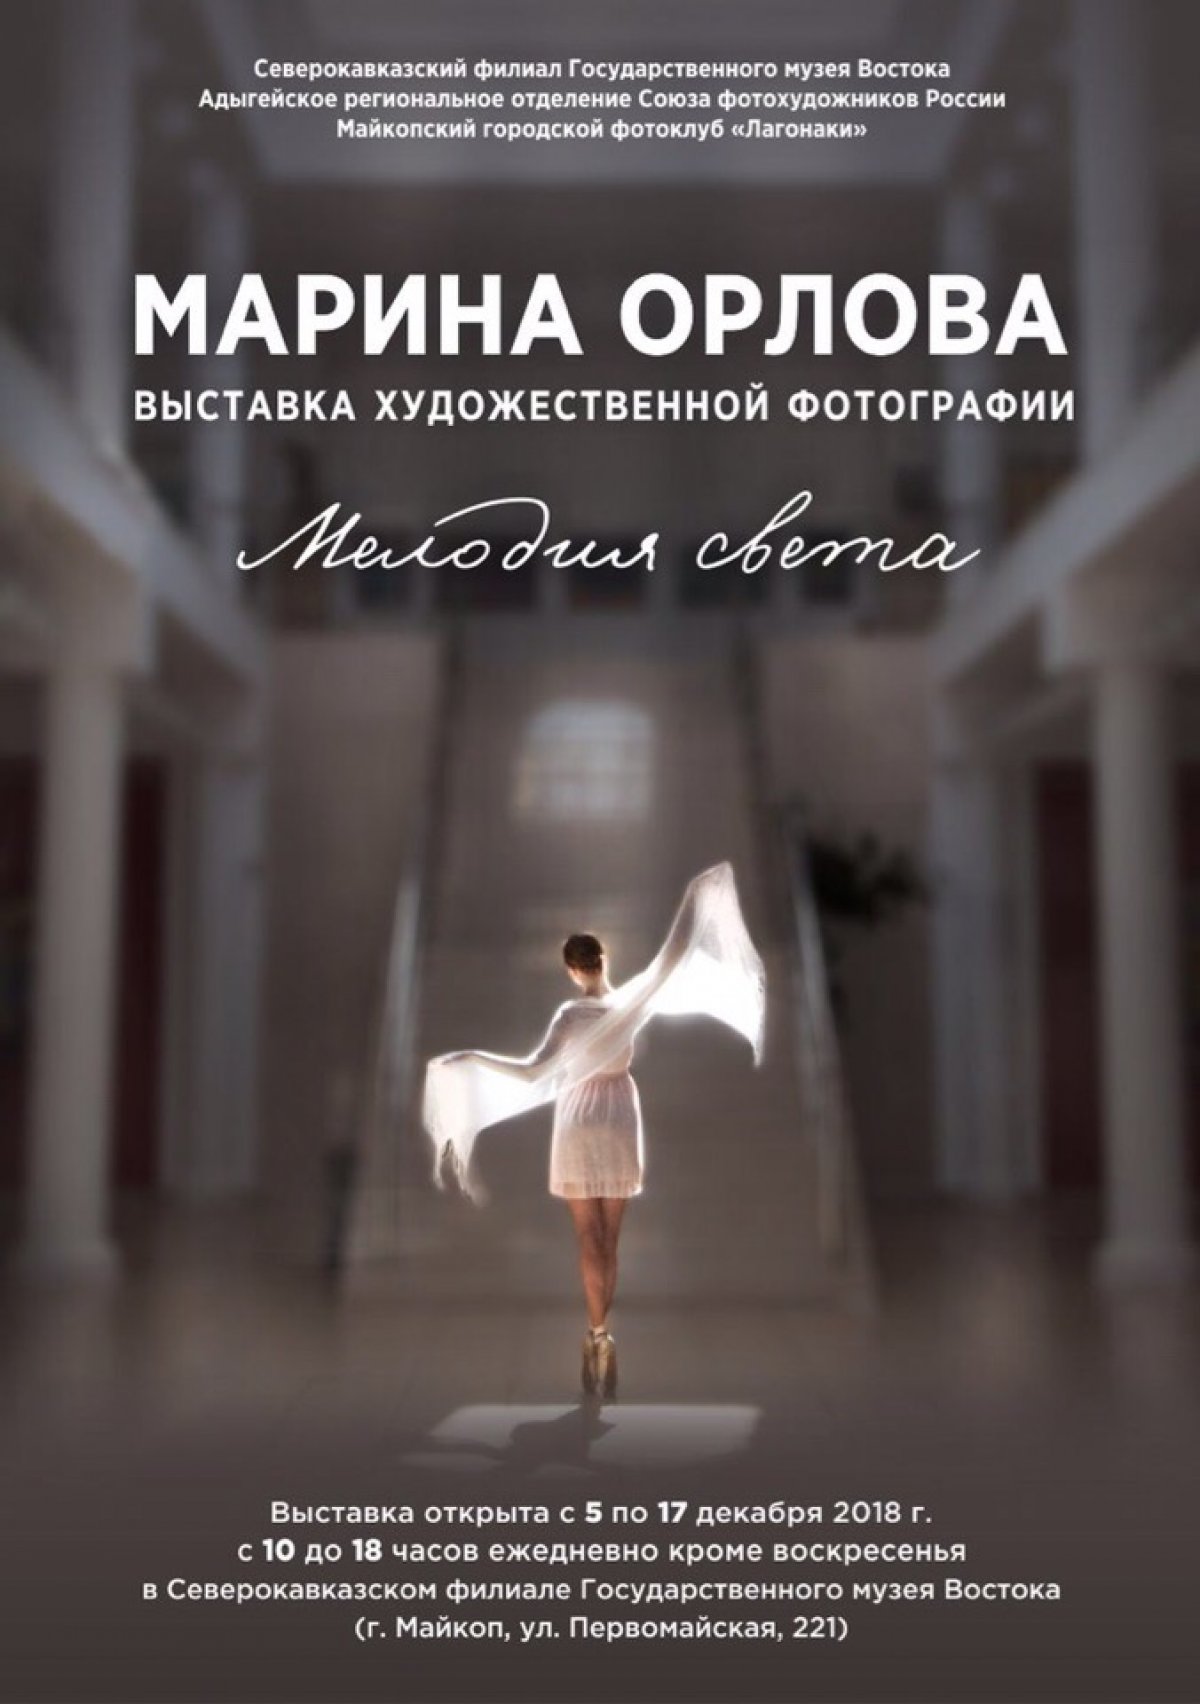 Завтра, 5 декабря, состоится открытие выставки преподавателя Института искусств Марины Орловой